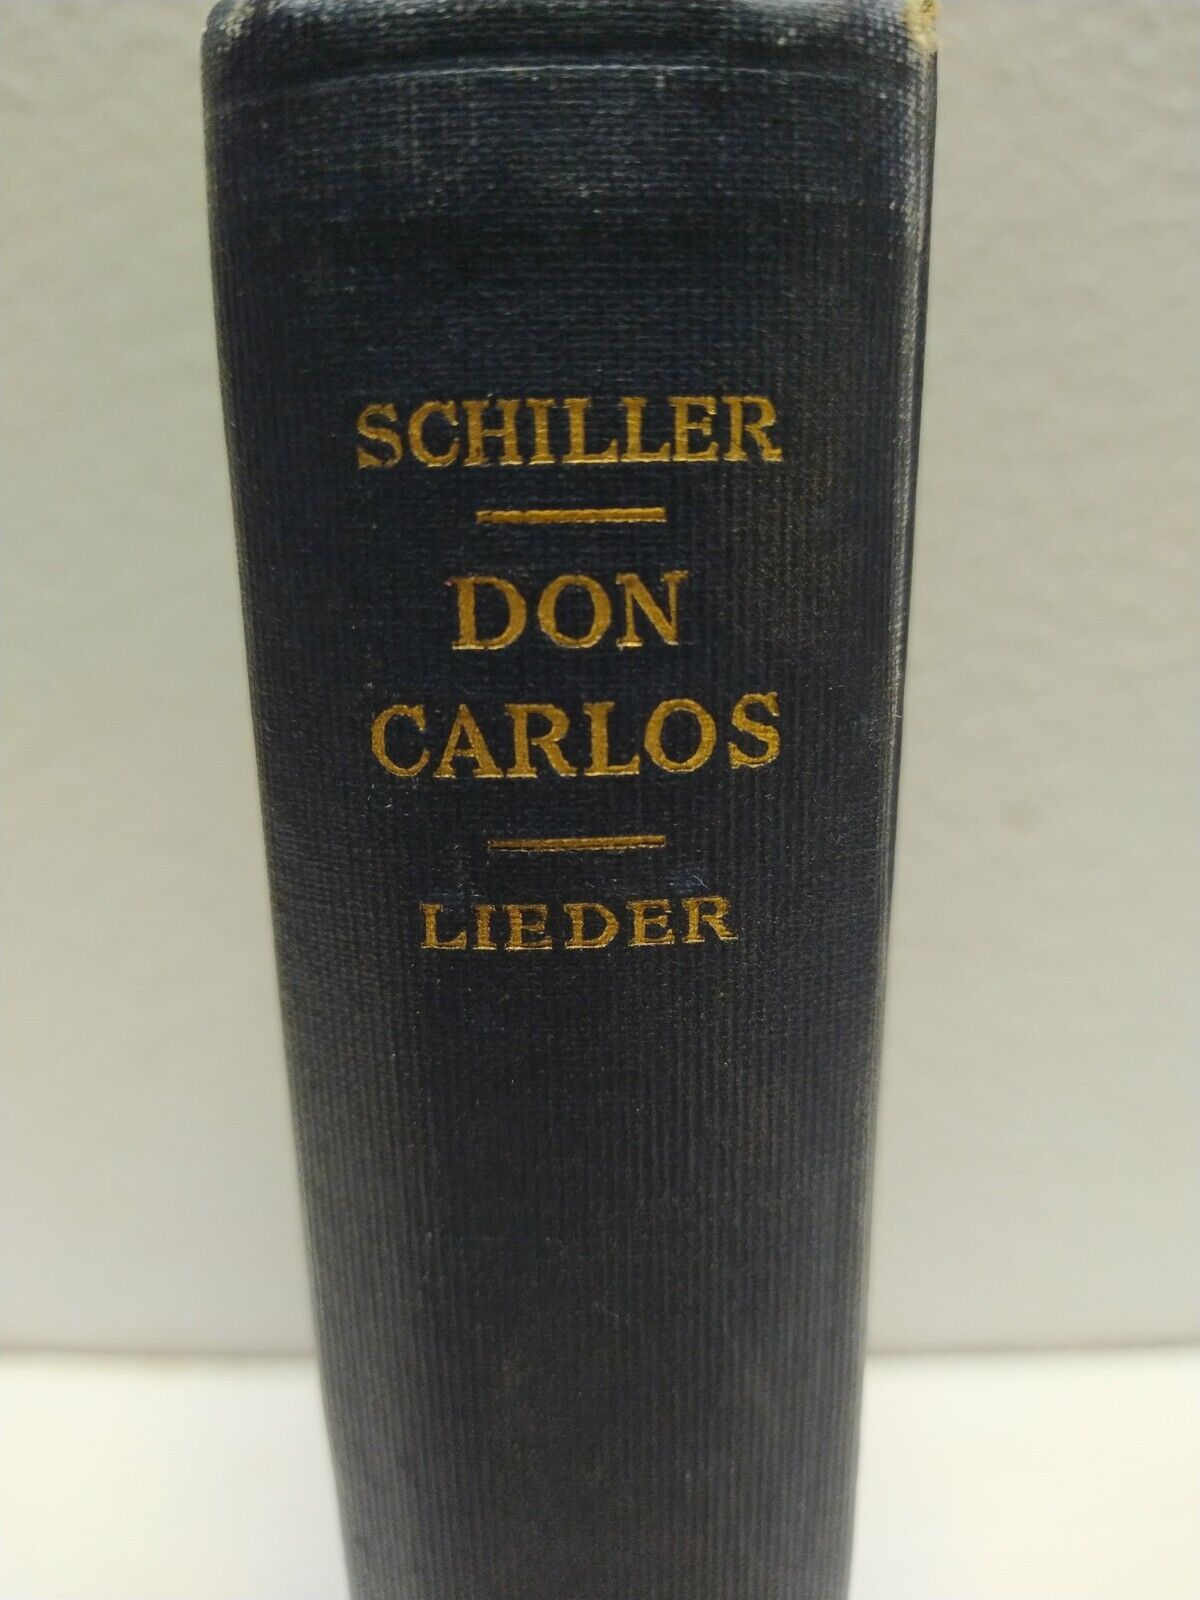 Schiller Don Carlos 1912 HC book Oxford German series infant von Spanien Gold